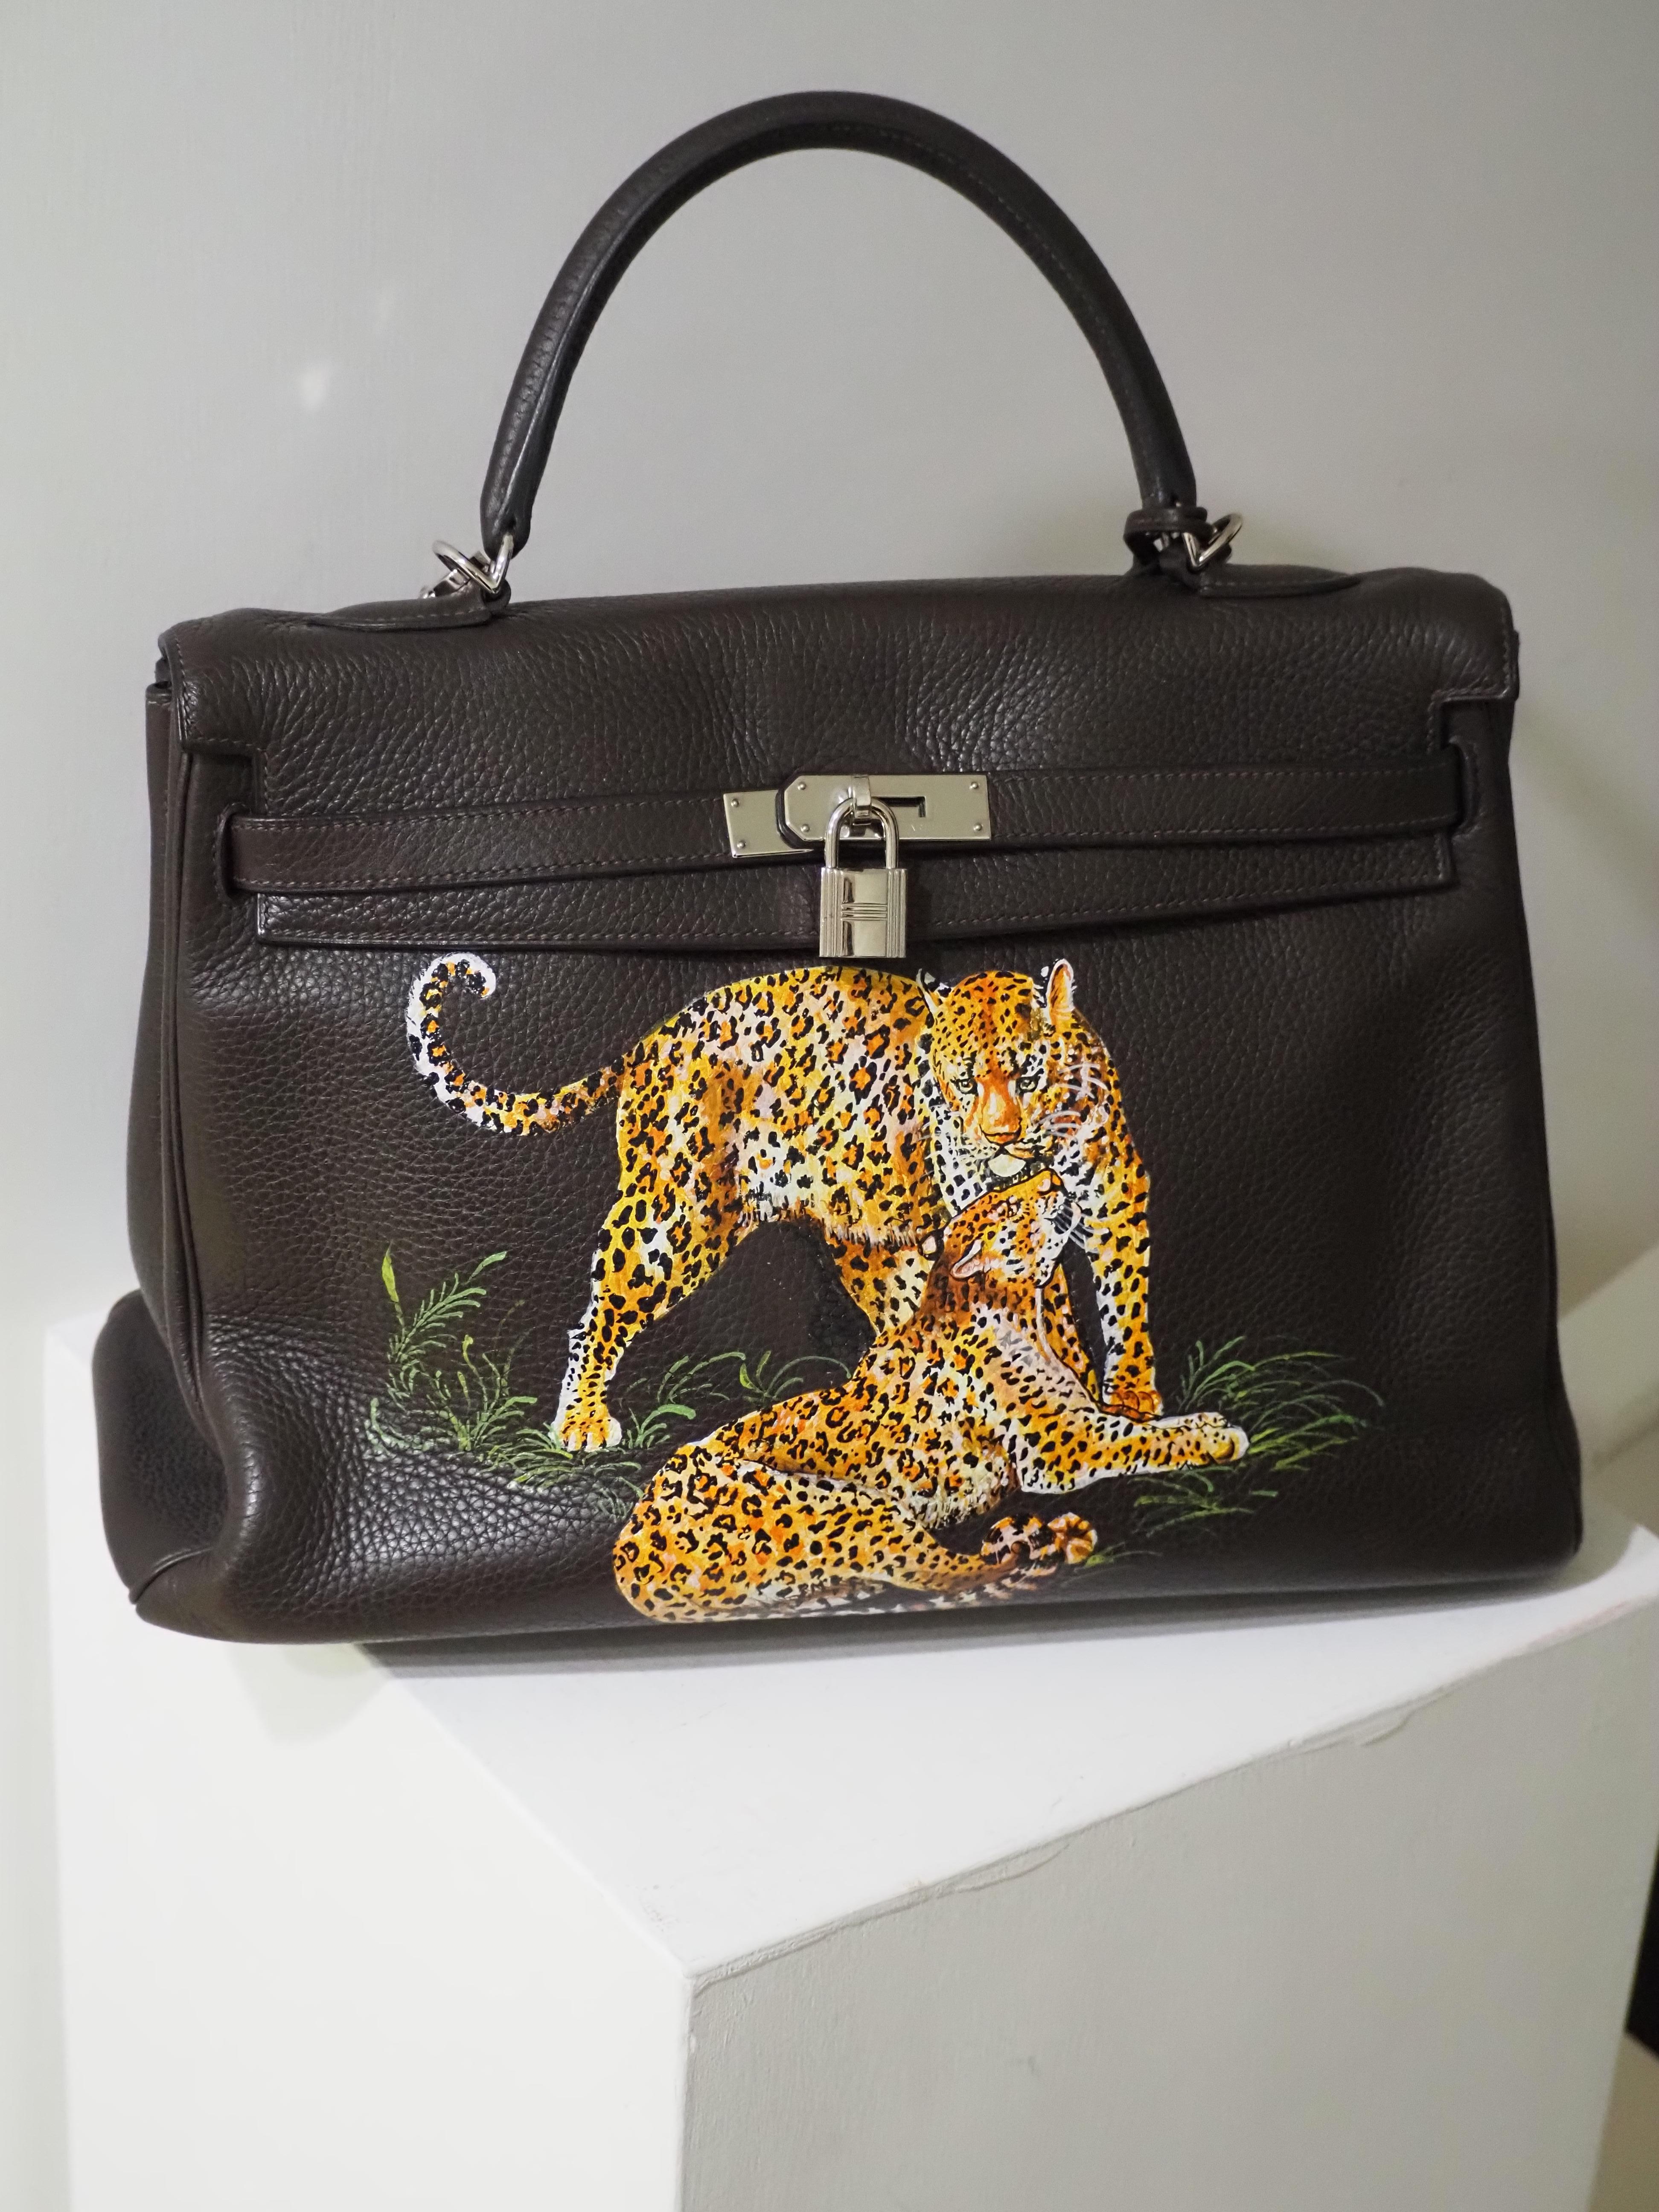 Black Hermès 35 Brown leather handpainted handbag shoulder bag